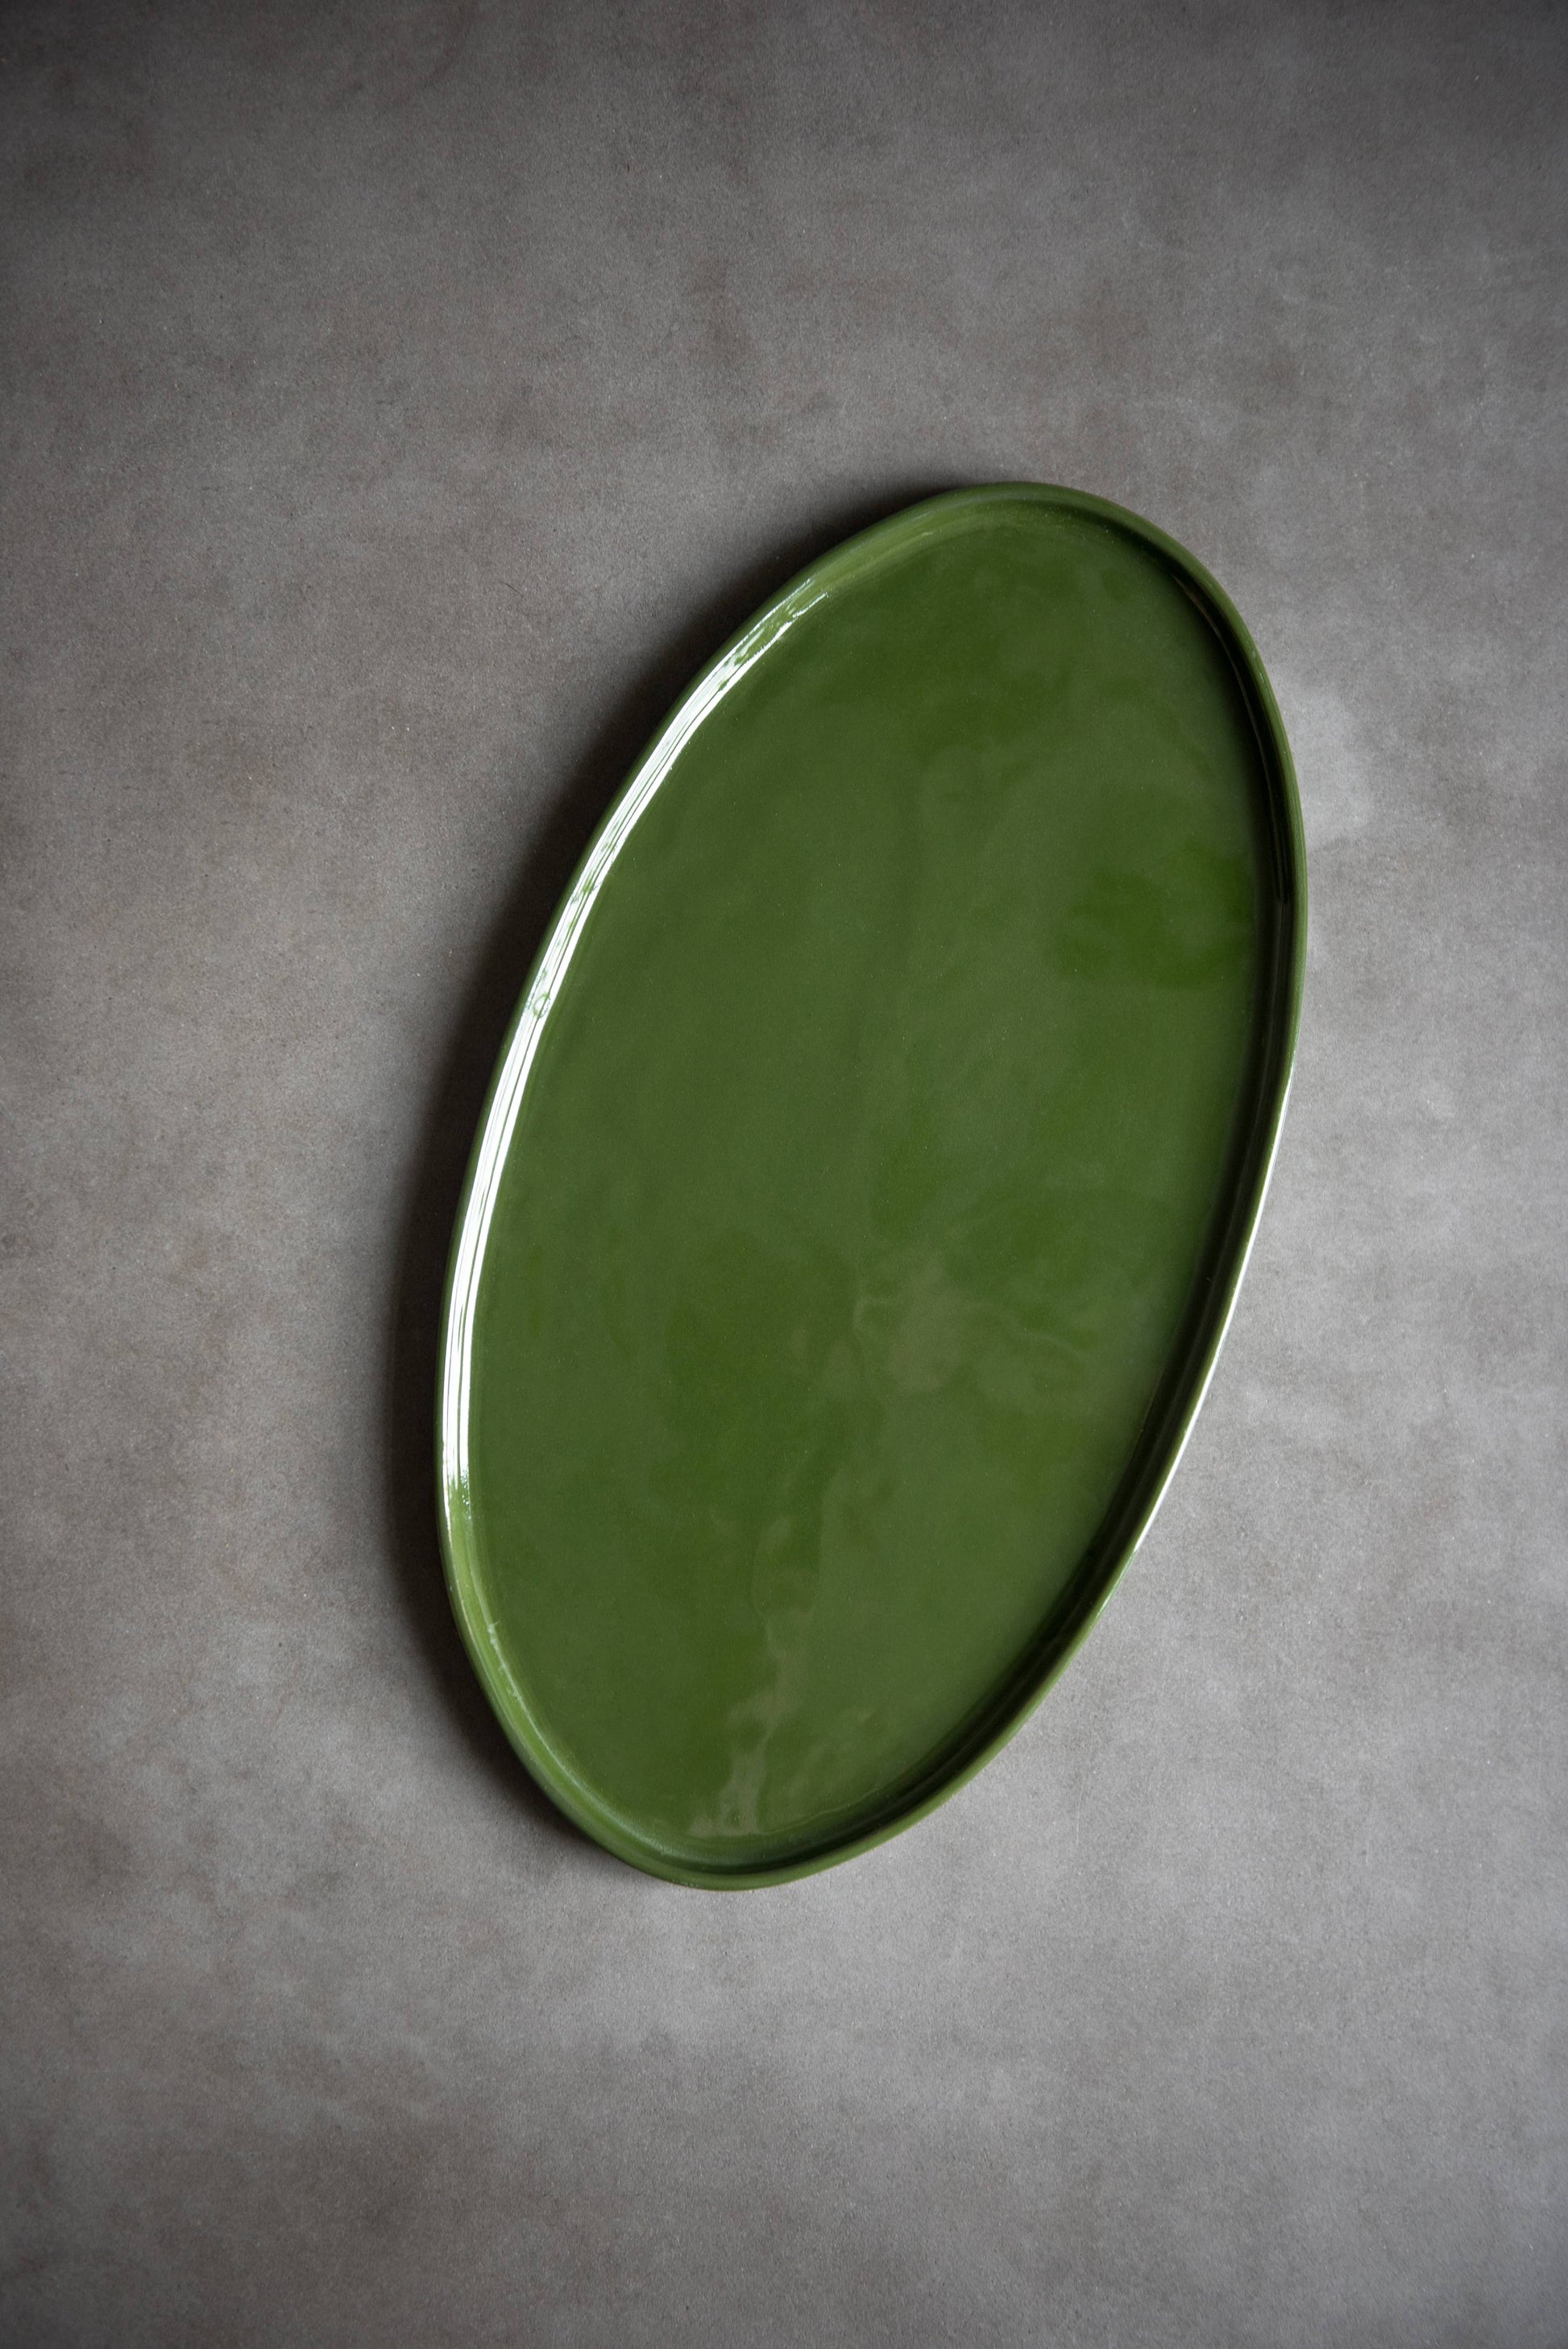 Ethical Trade Co Home Large / Green / Plain Handmade Ukrainian Porcelain Serving Platter